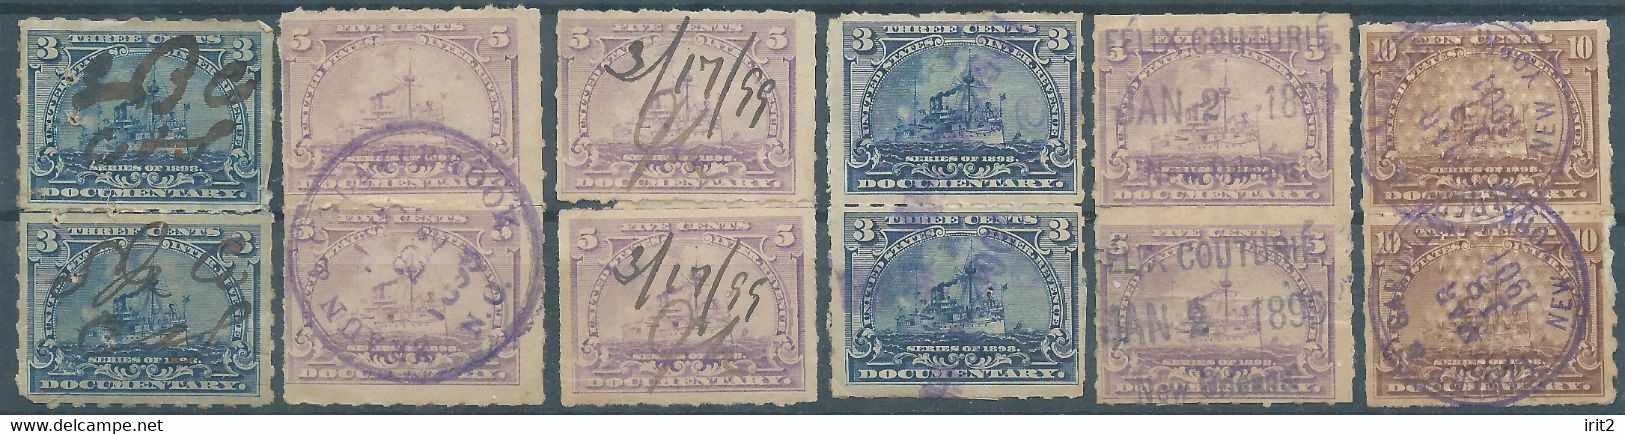 Stati Uniti D'america,United States,U.S.A,1899 - 1901 , INTERNAL REVENUE STAMPS - IN PAIRS Used - Revenues